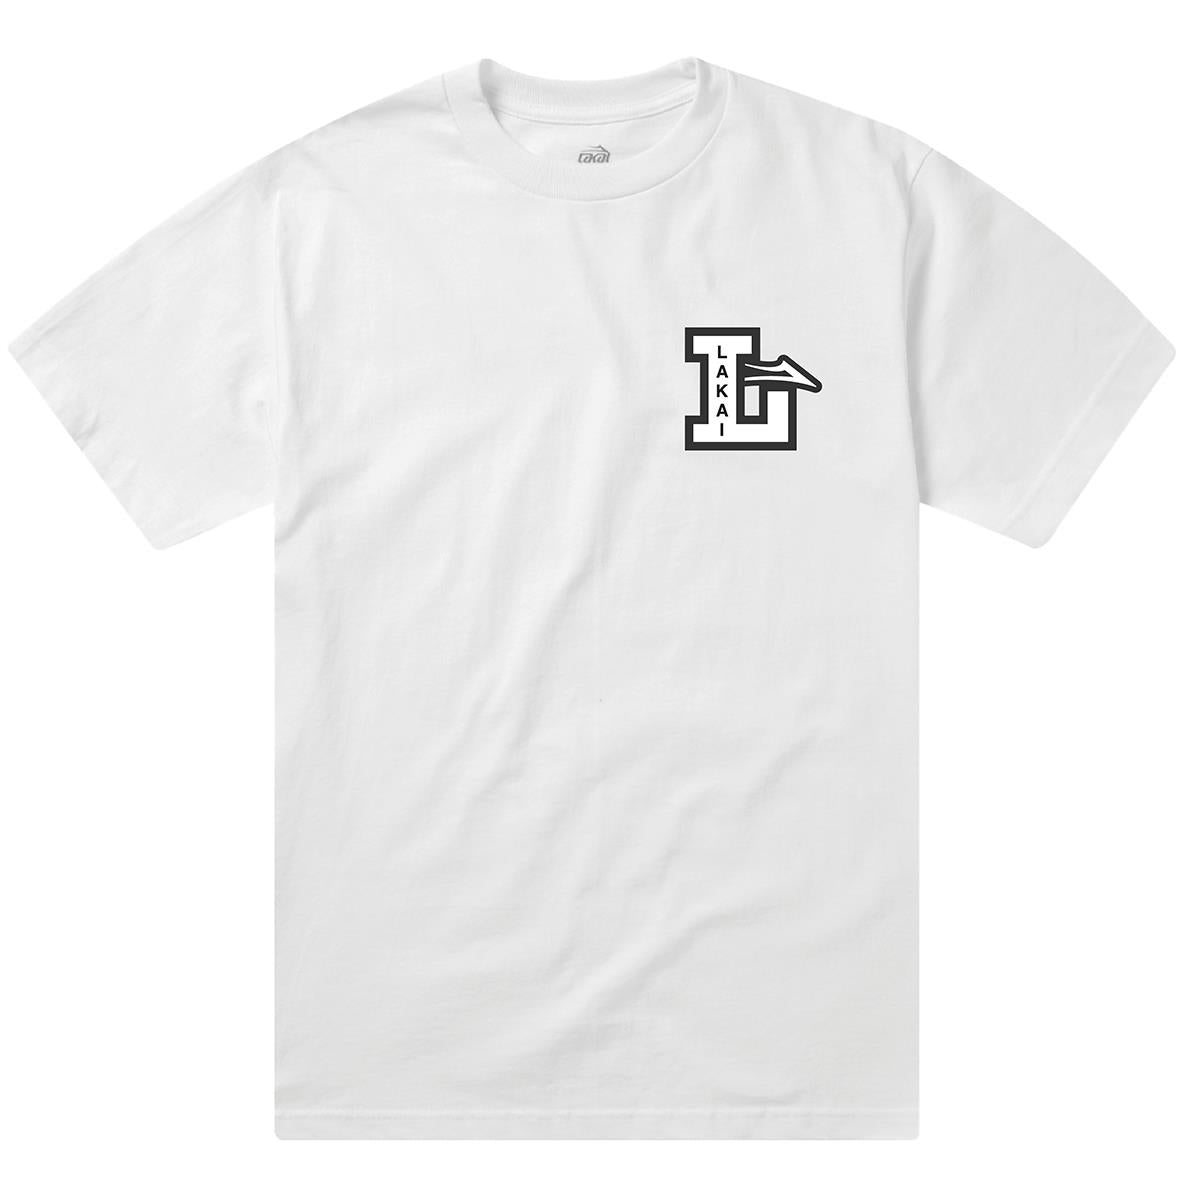 Lakai Letterman T-Shirt - White Small